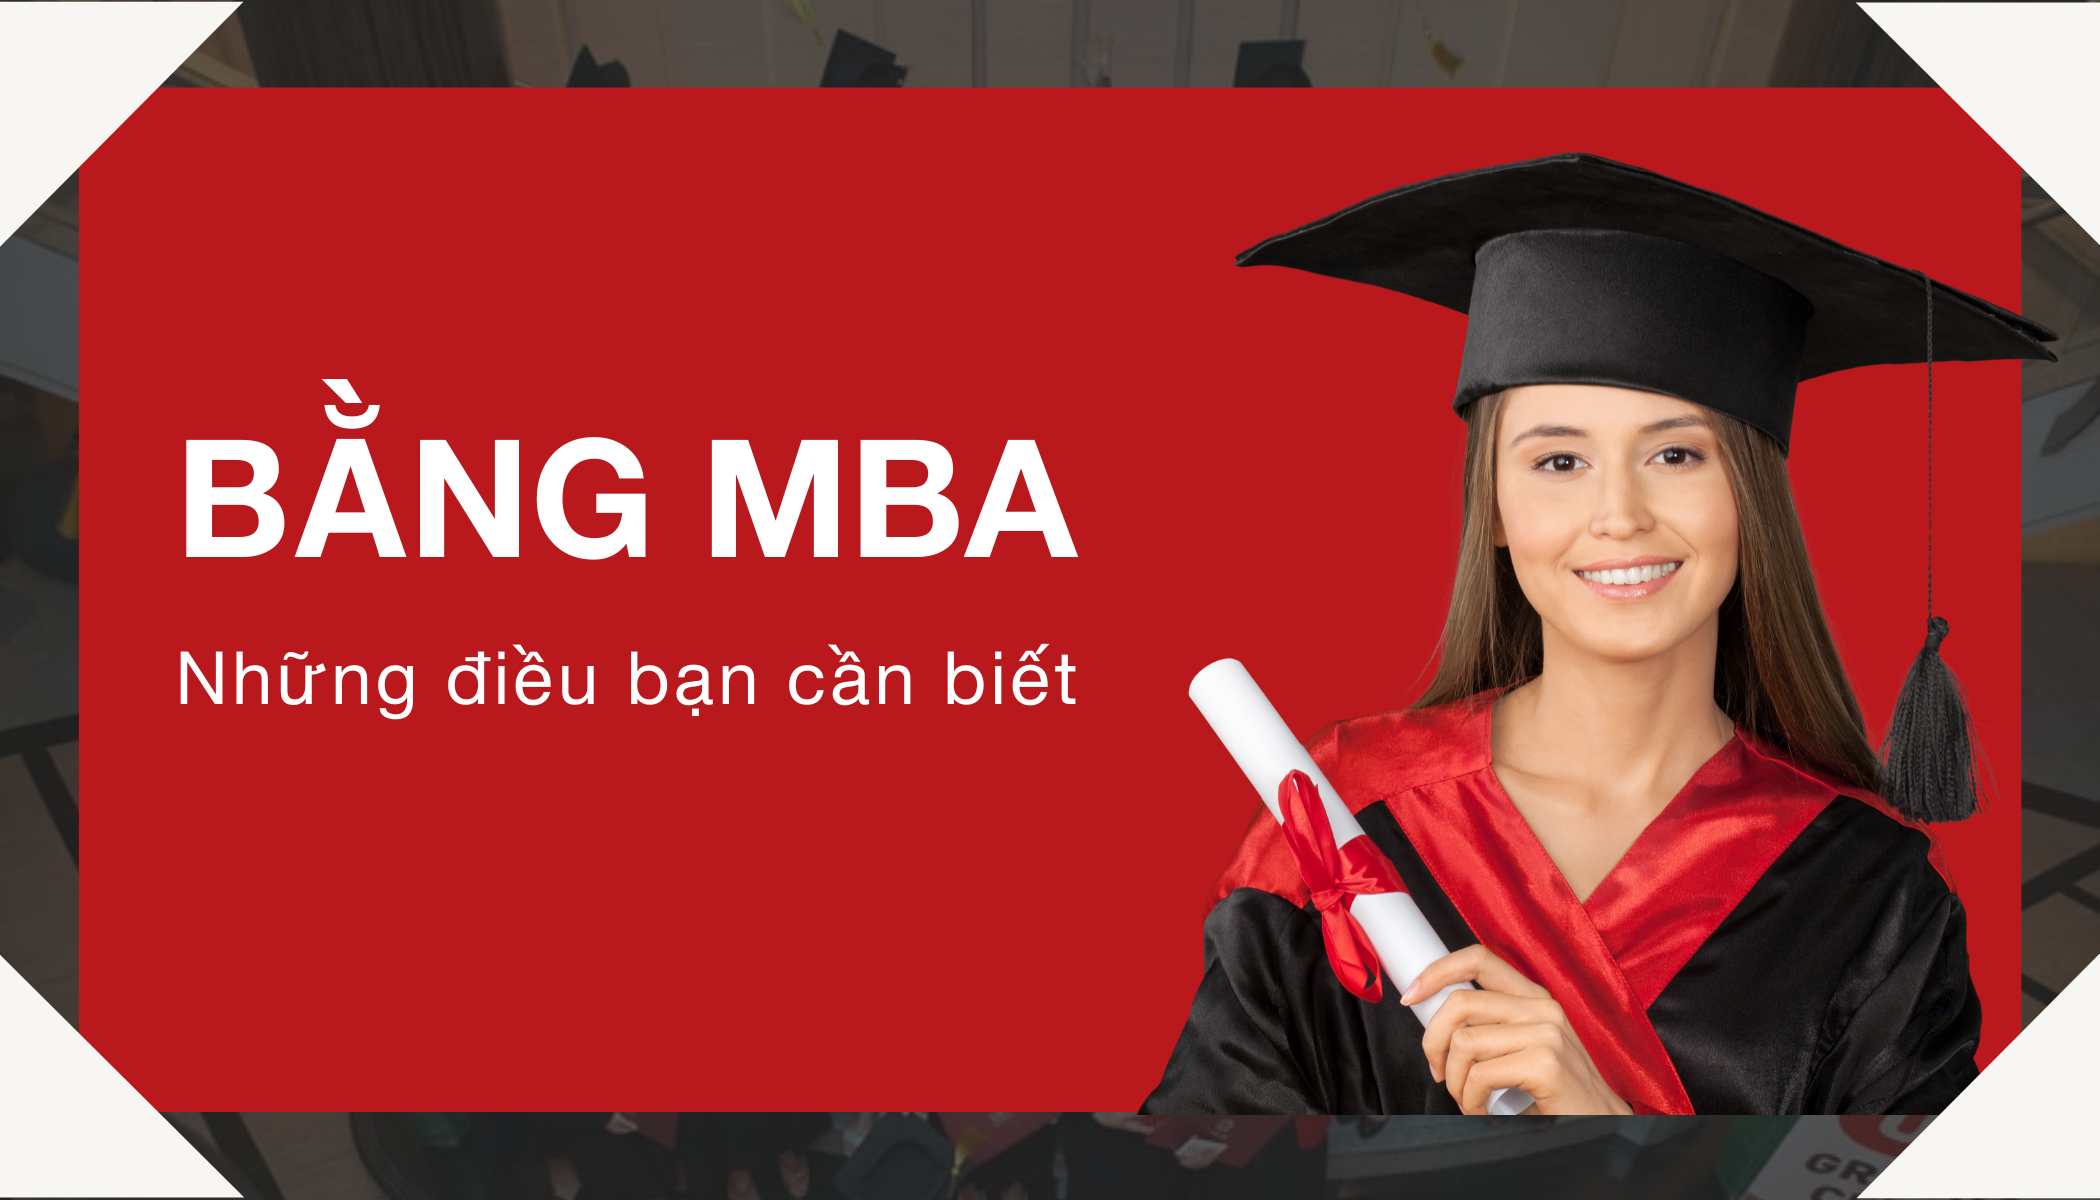 Bằng MBA Là Gì Và Tất Tần Tật Về Những Điều Cần Biết Về MBA